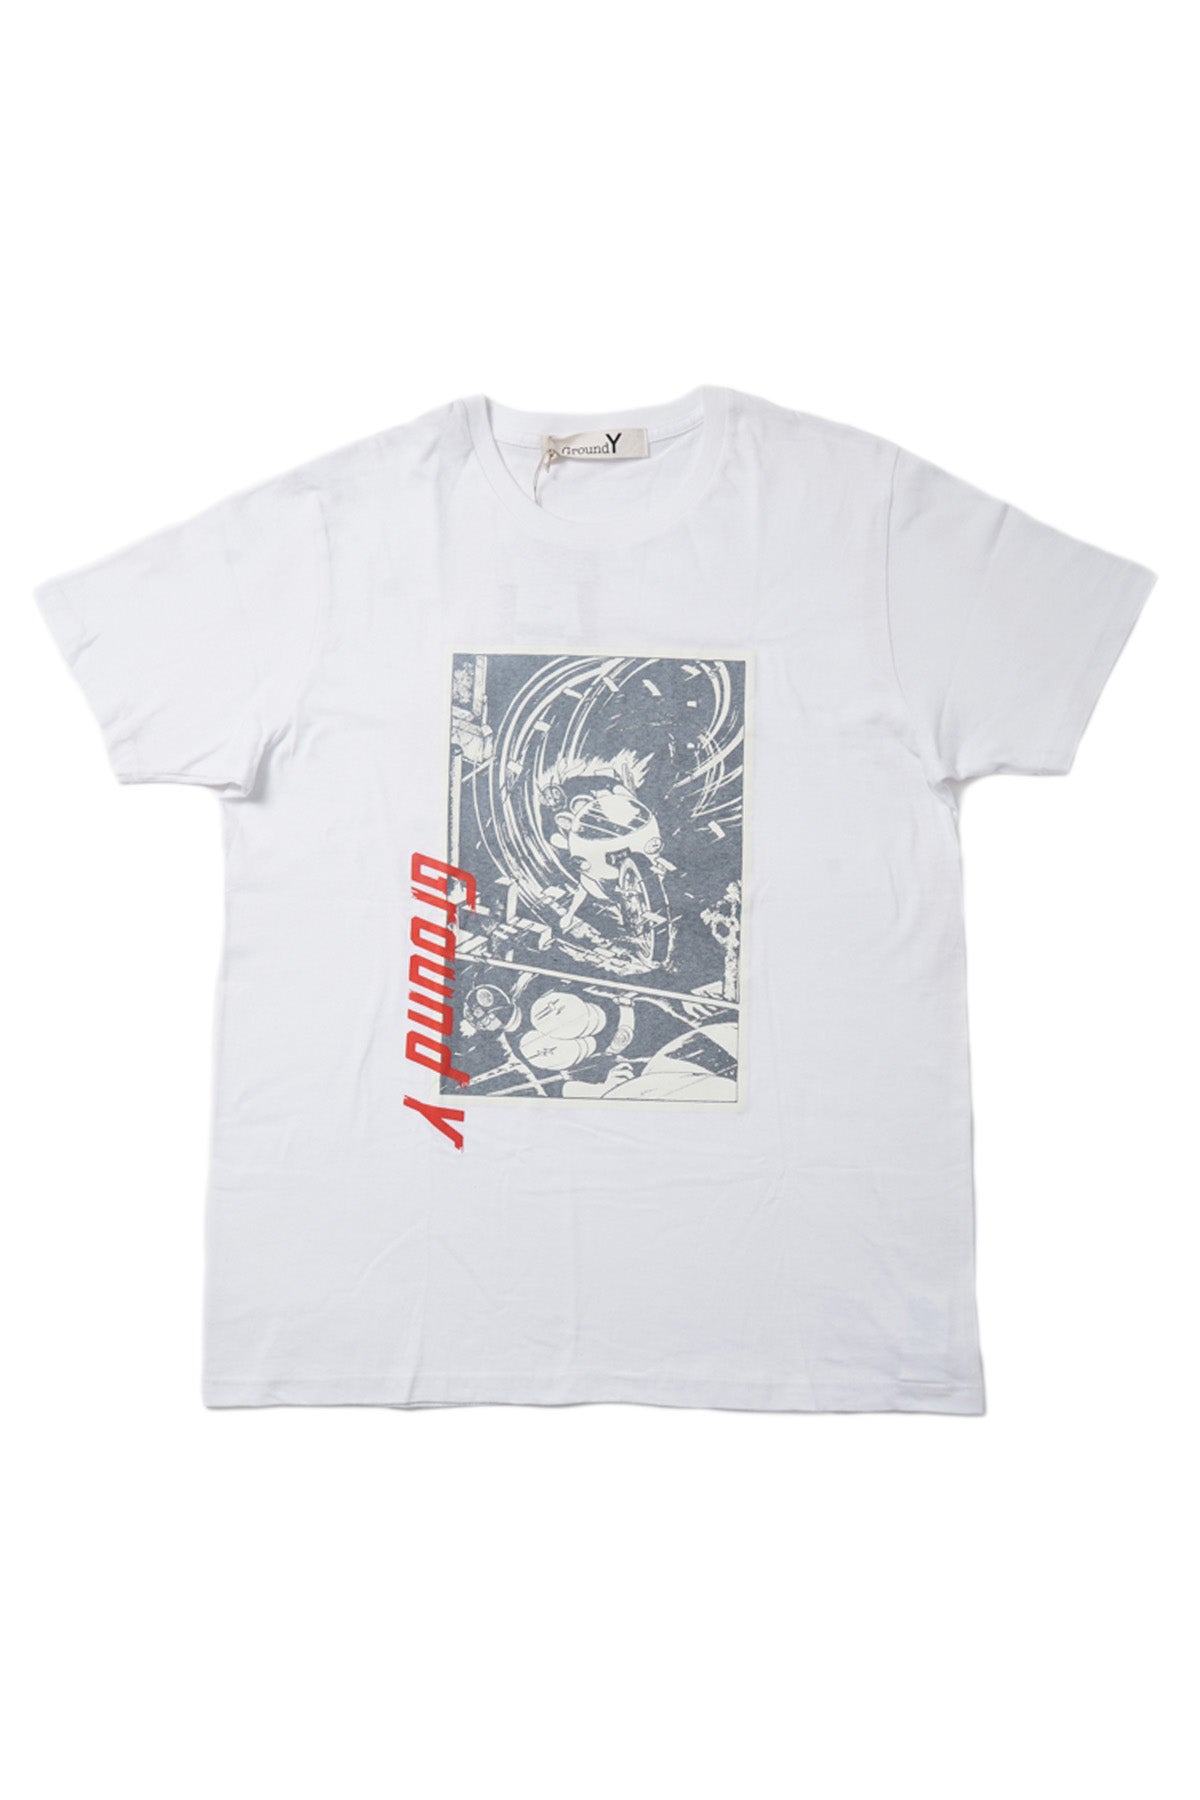 × 仮面ライダー / Print T-Shirt【50%OFF】